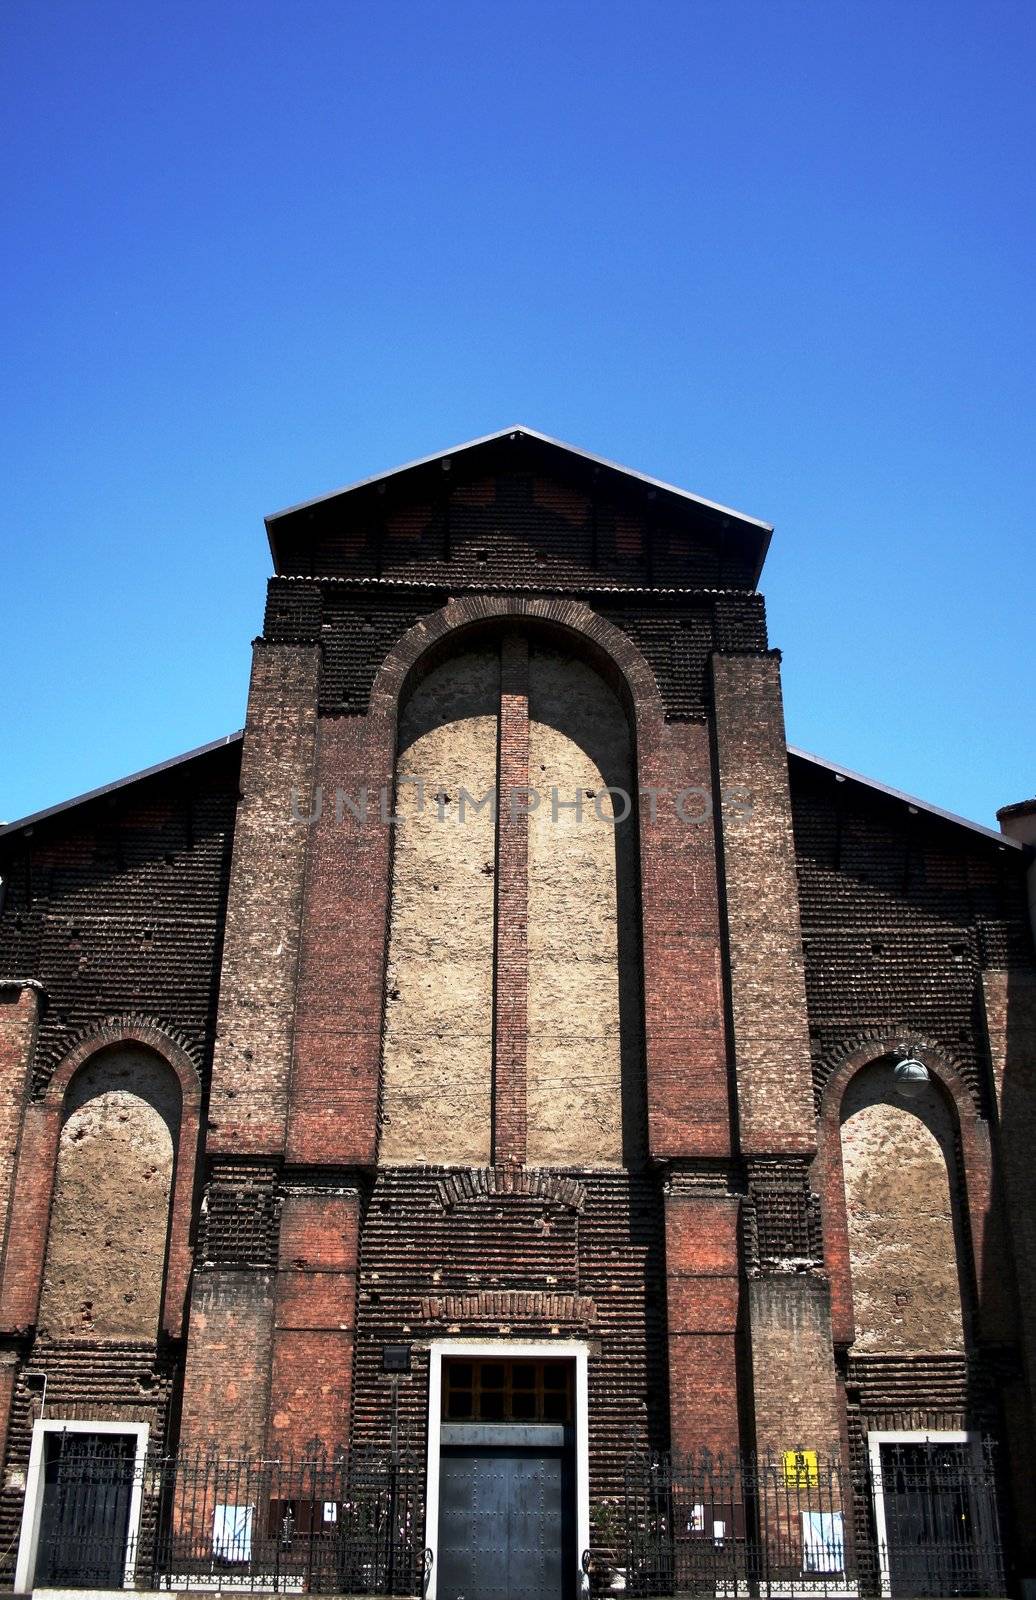 Church facade details, Milan, Italy